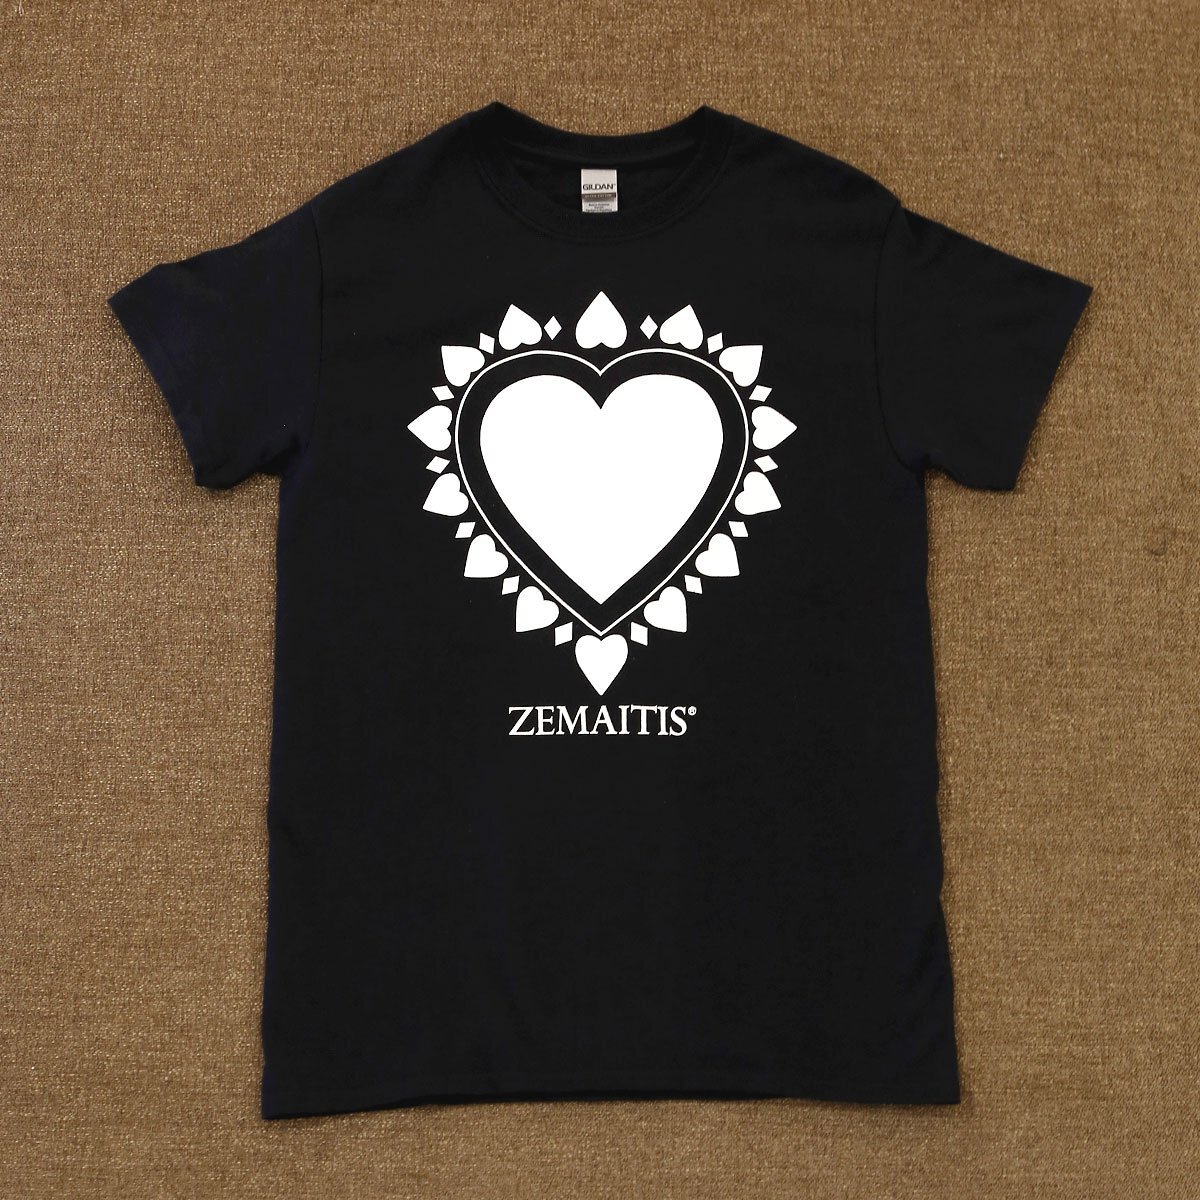 送料無料 新品 ZEMAITIS T-SHIRTS HEART BLK S ゼマイティス 半袖 Tシャツ メンズ Sサイズ 黒 ブラック コットン100% ロックT ハート_ZEMAITIS T-SHIRTS HEART BLK S